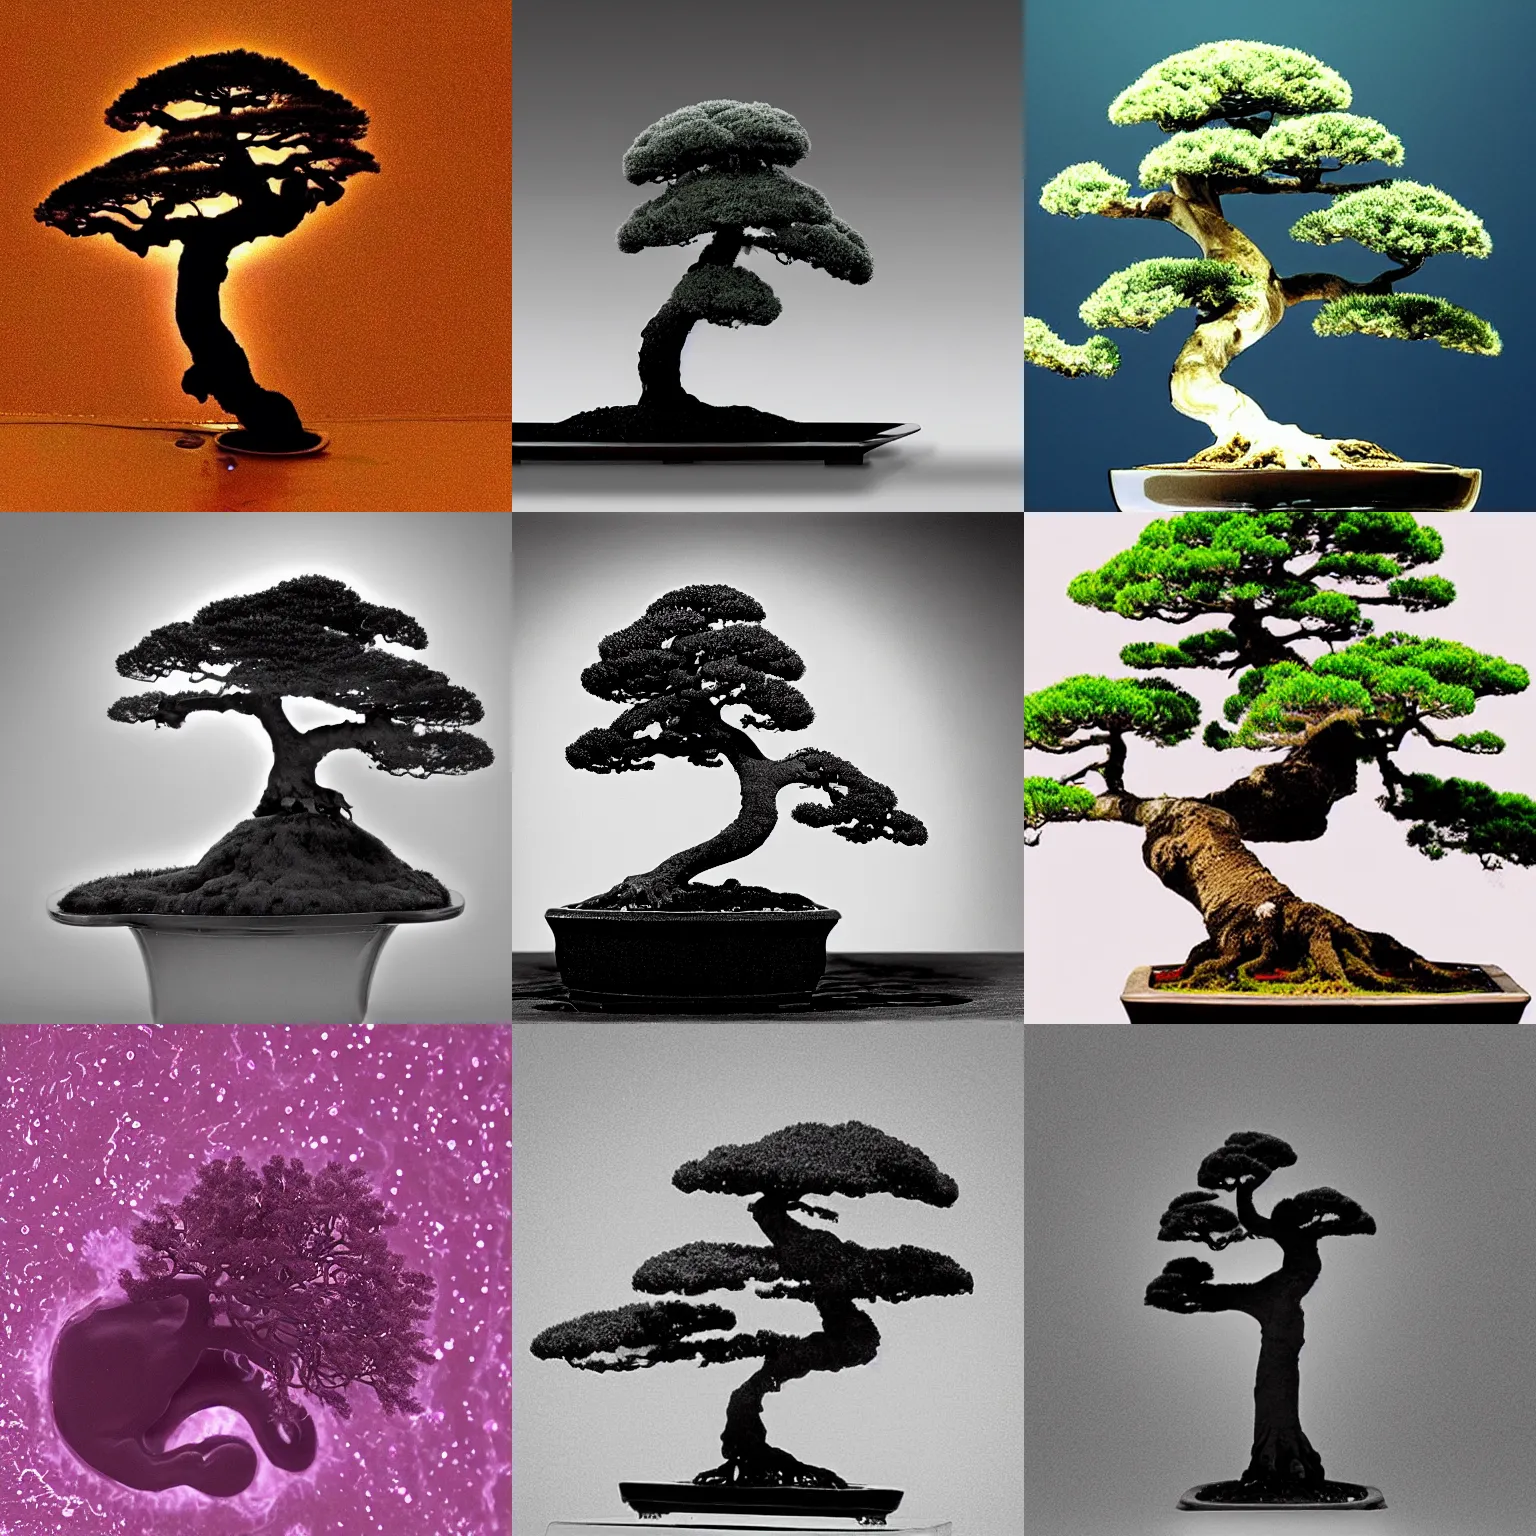 Prompt: an amoeba shaped like a bonsai tree, phase-contrast microscopy